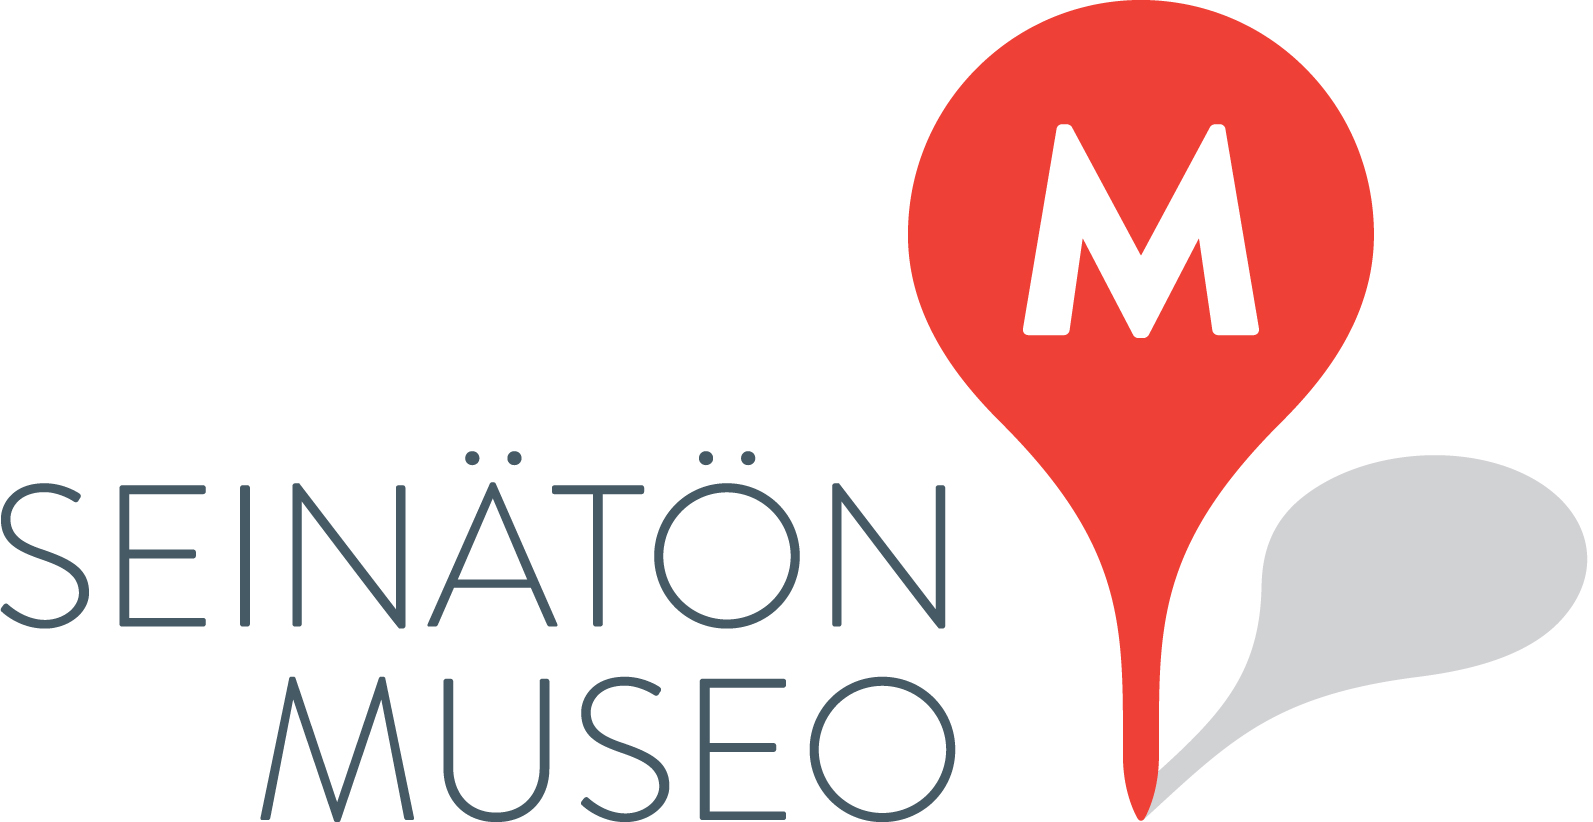 Seinätön museo -palvelun logo on punainen paikkamerkki jossa on valkoinen m-kirjain.